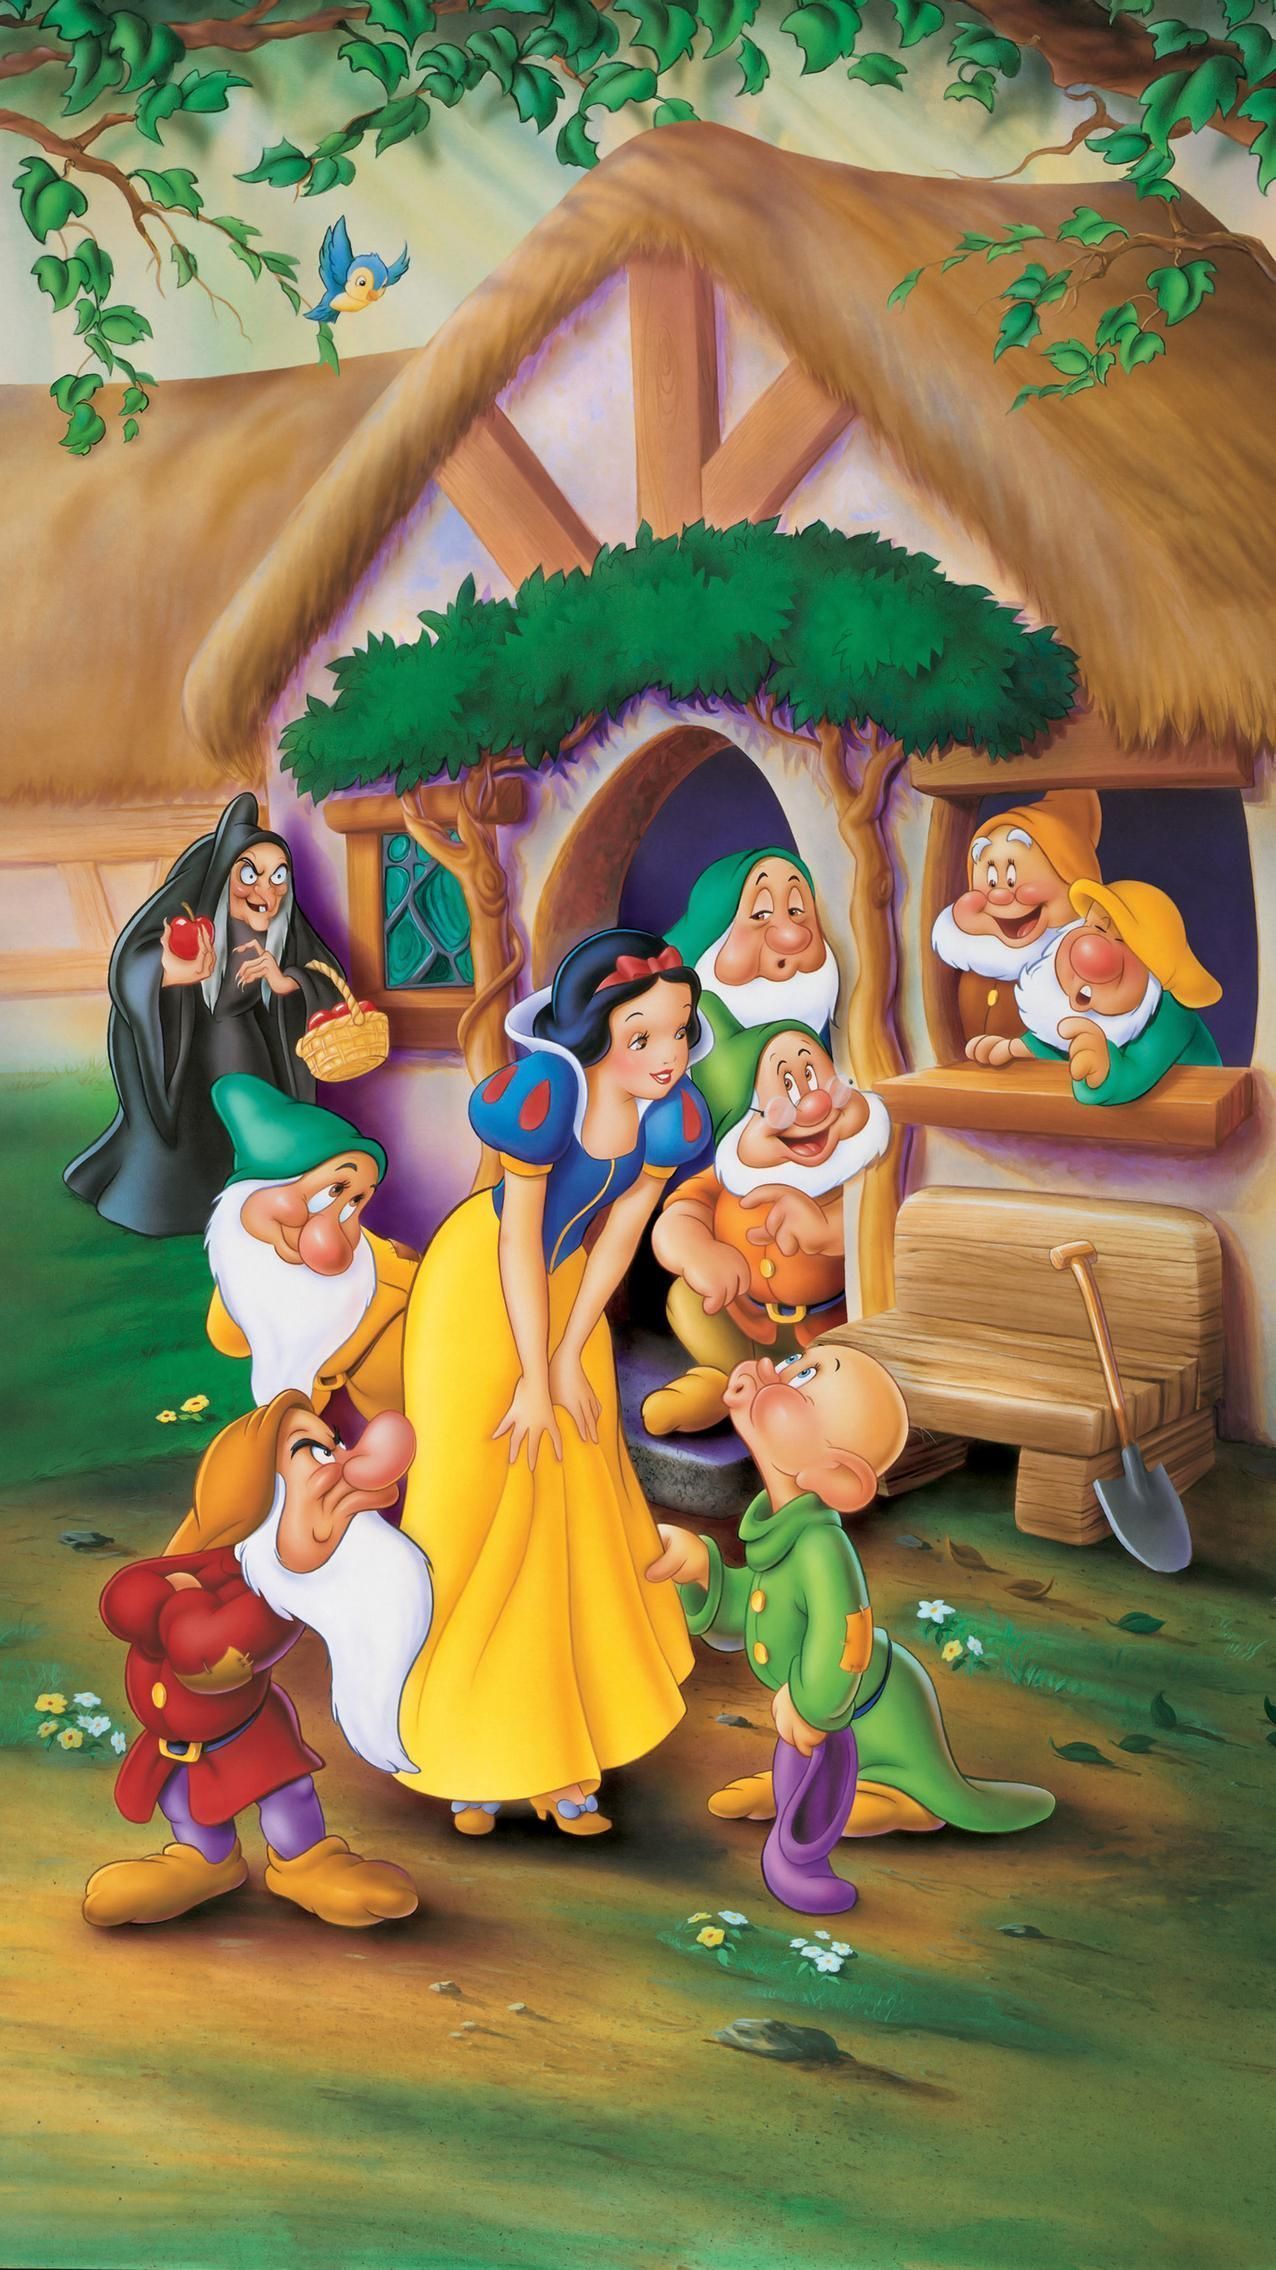 Disney princess wallpaper .com